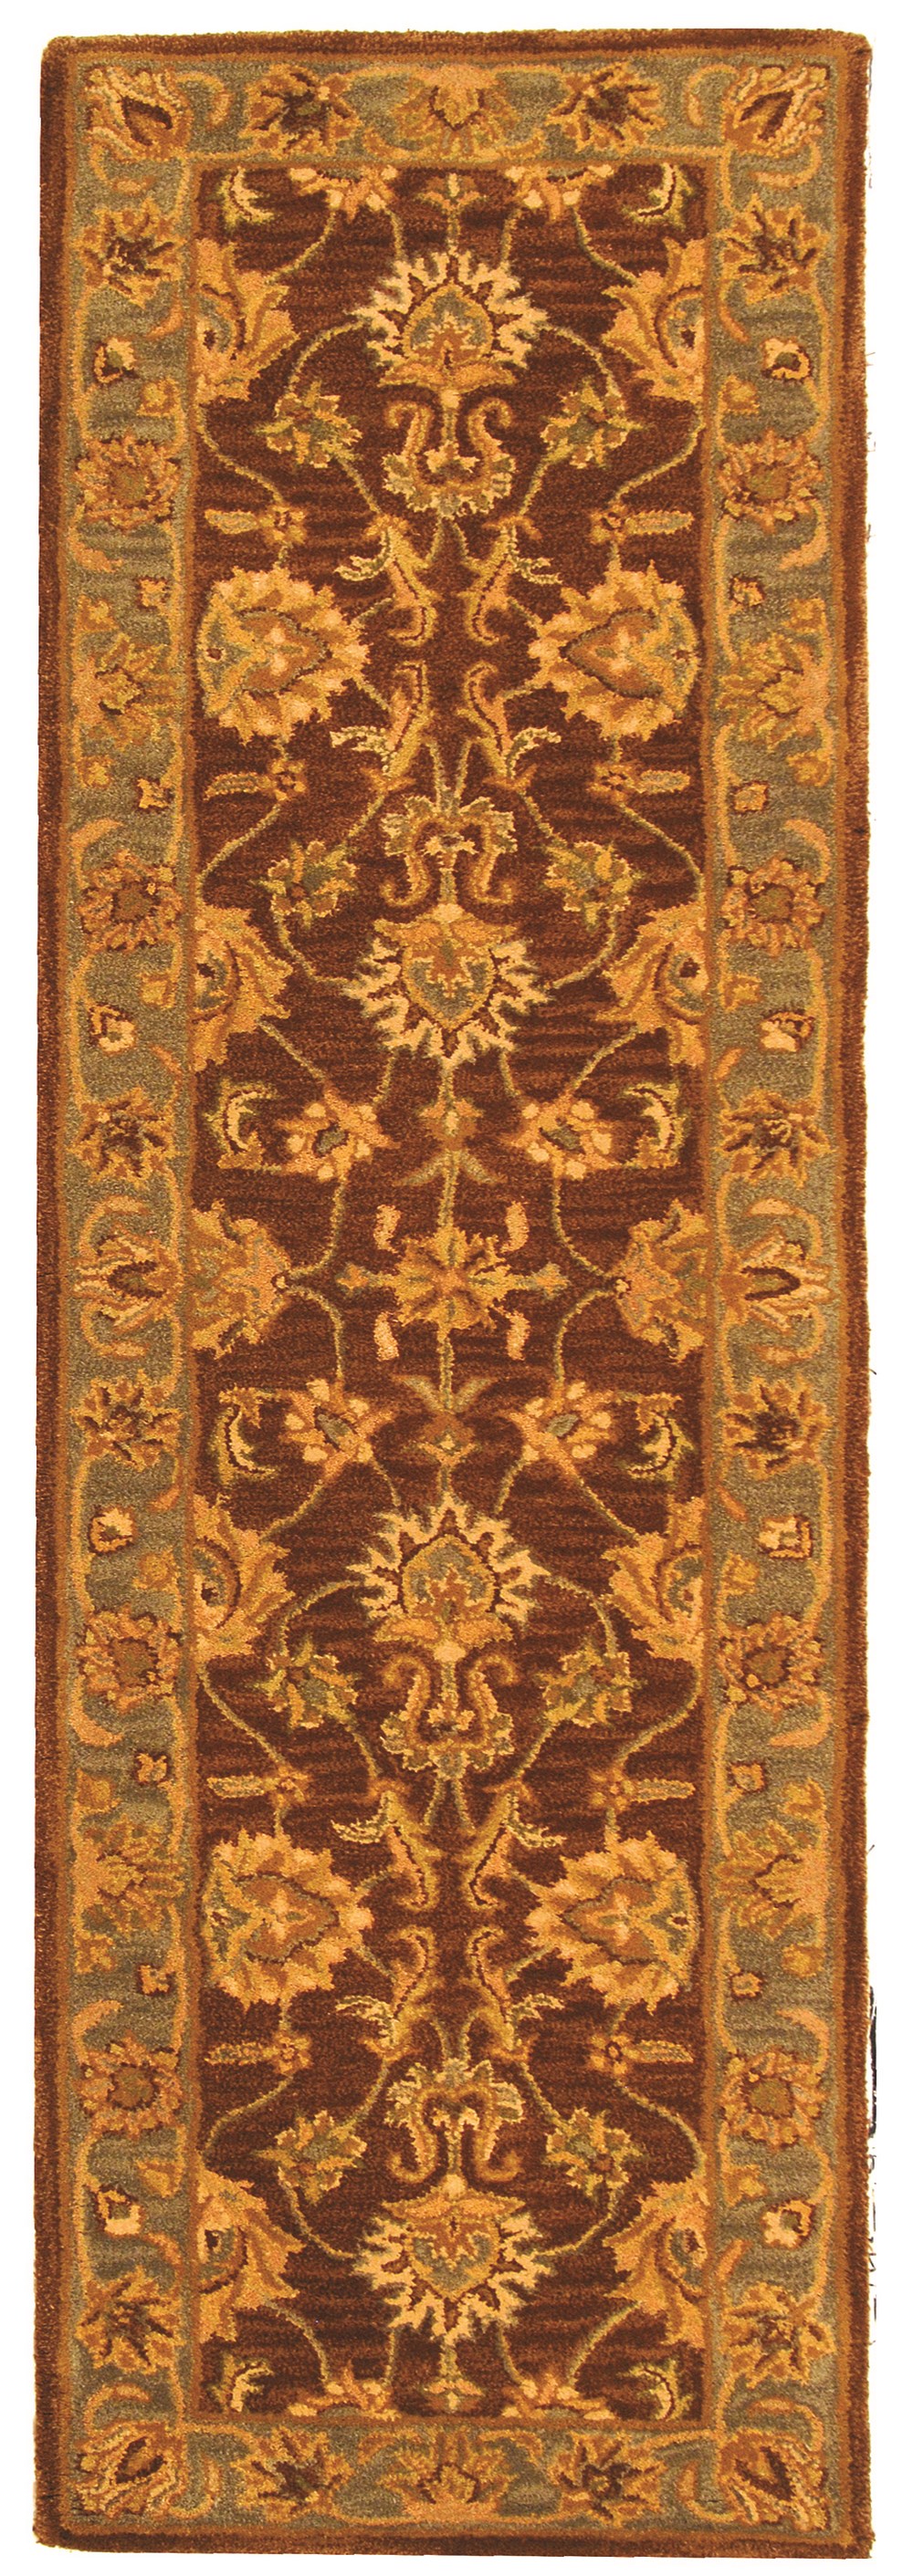 SAFAVIEH Heritage Regis Traditional Wool Runner Rug, Brown/Blue, 2'3" x 14' - image 1 of 4